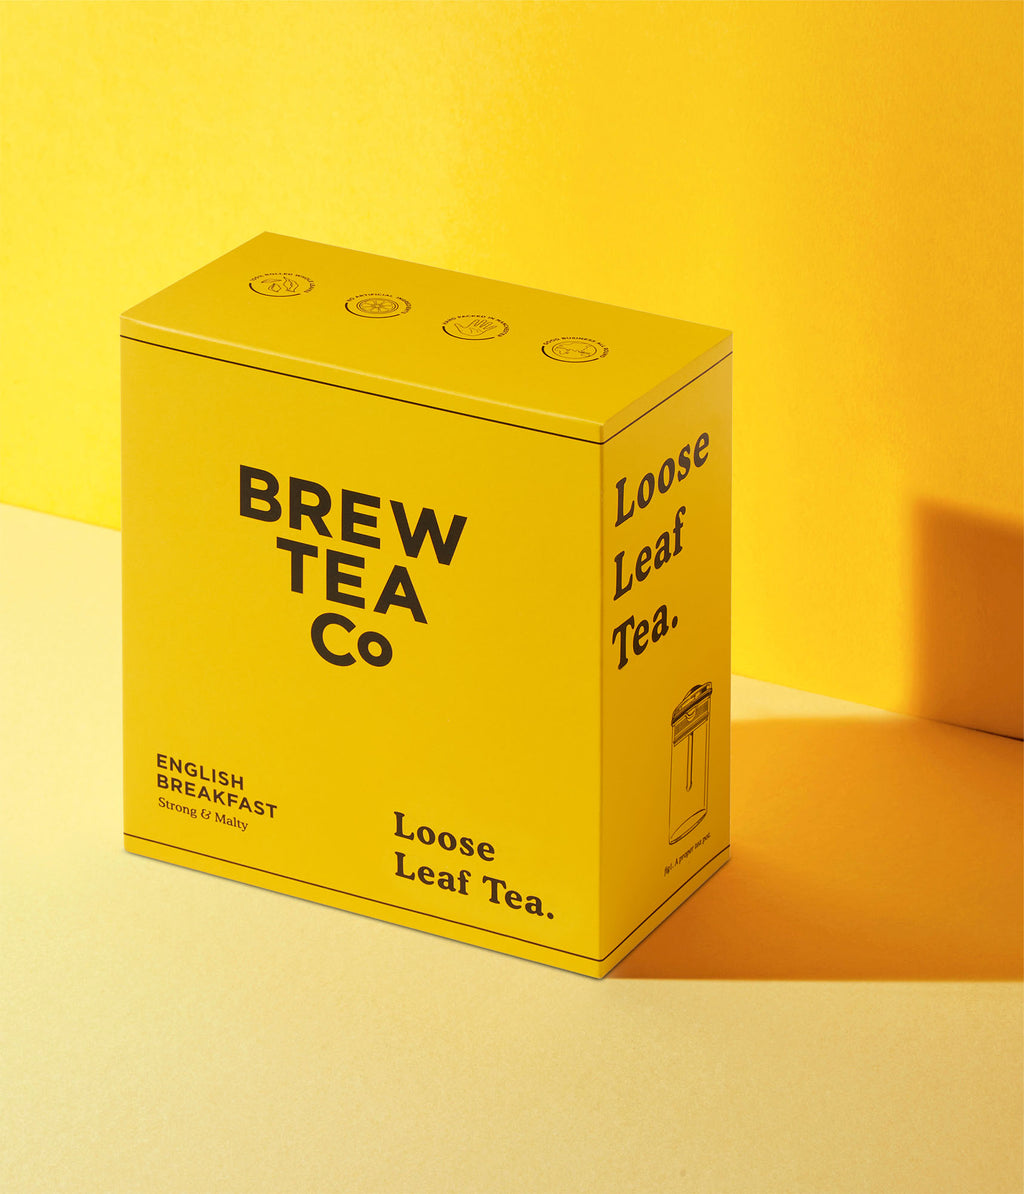 English Breakfast - Loose Leaf Tea